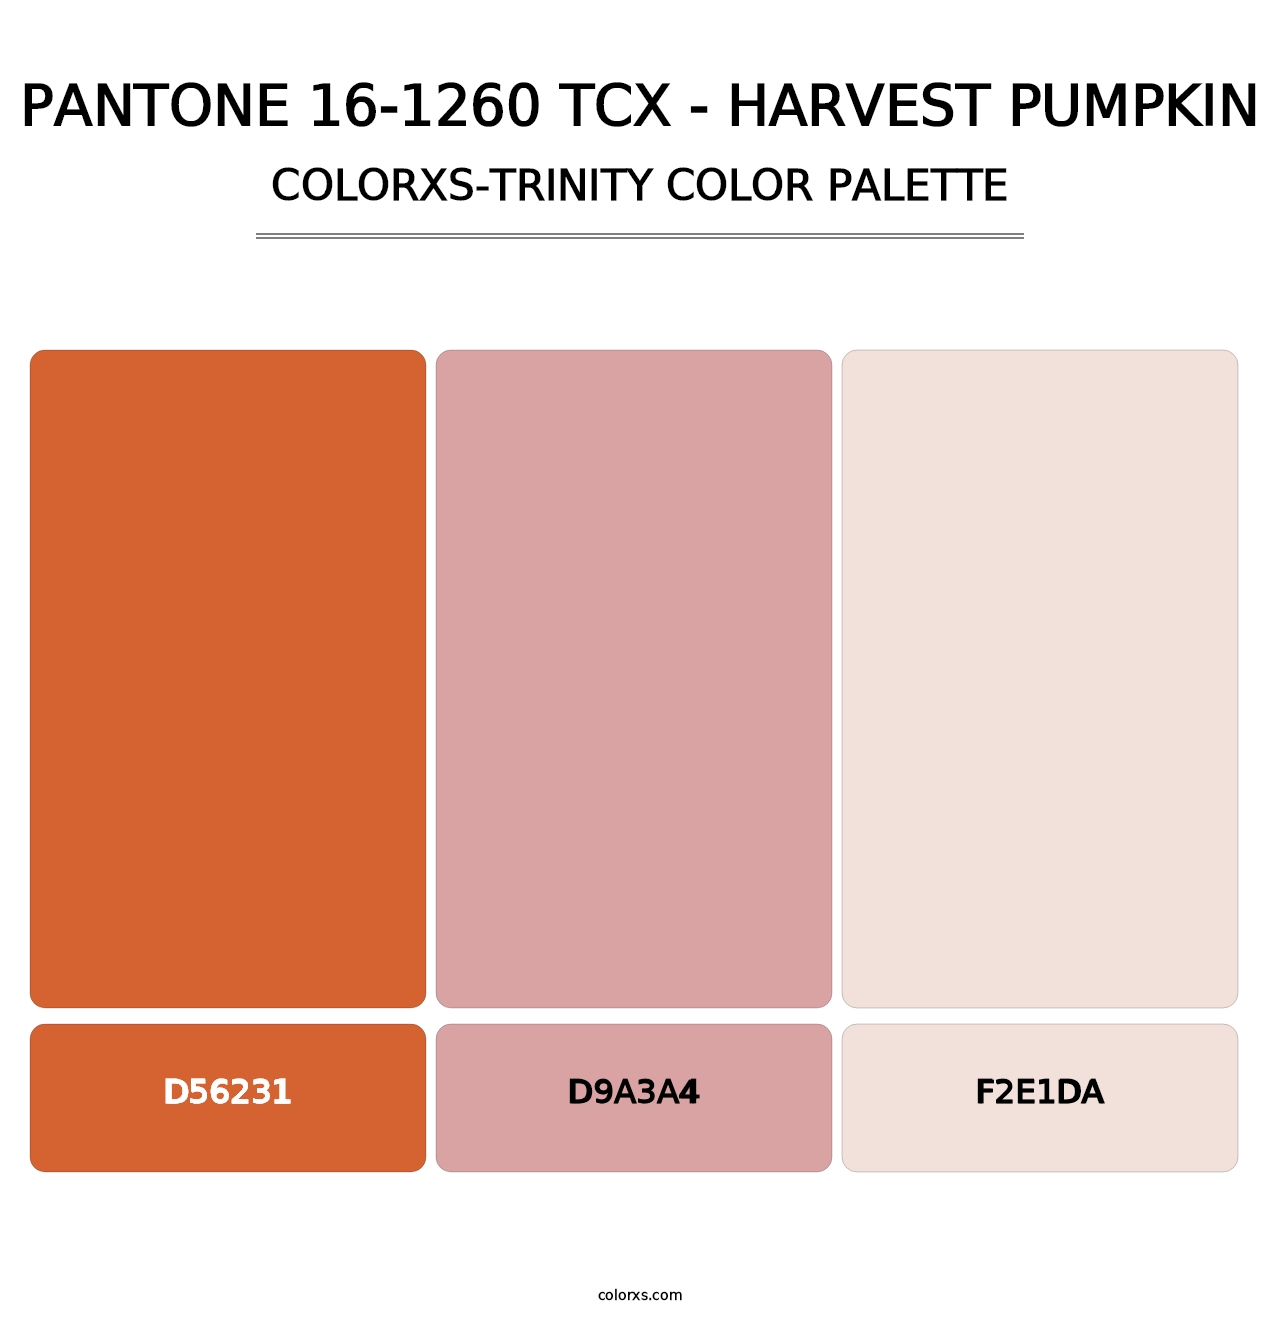 PANTONE 16-1260 TCX - Harvest Pumpkin - Colorxs Trinity Palette